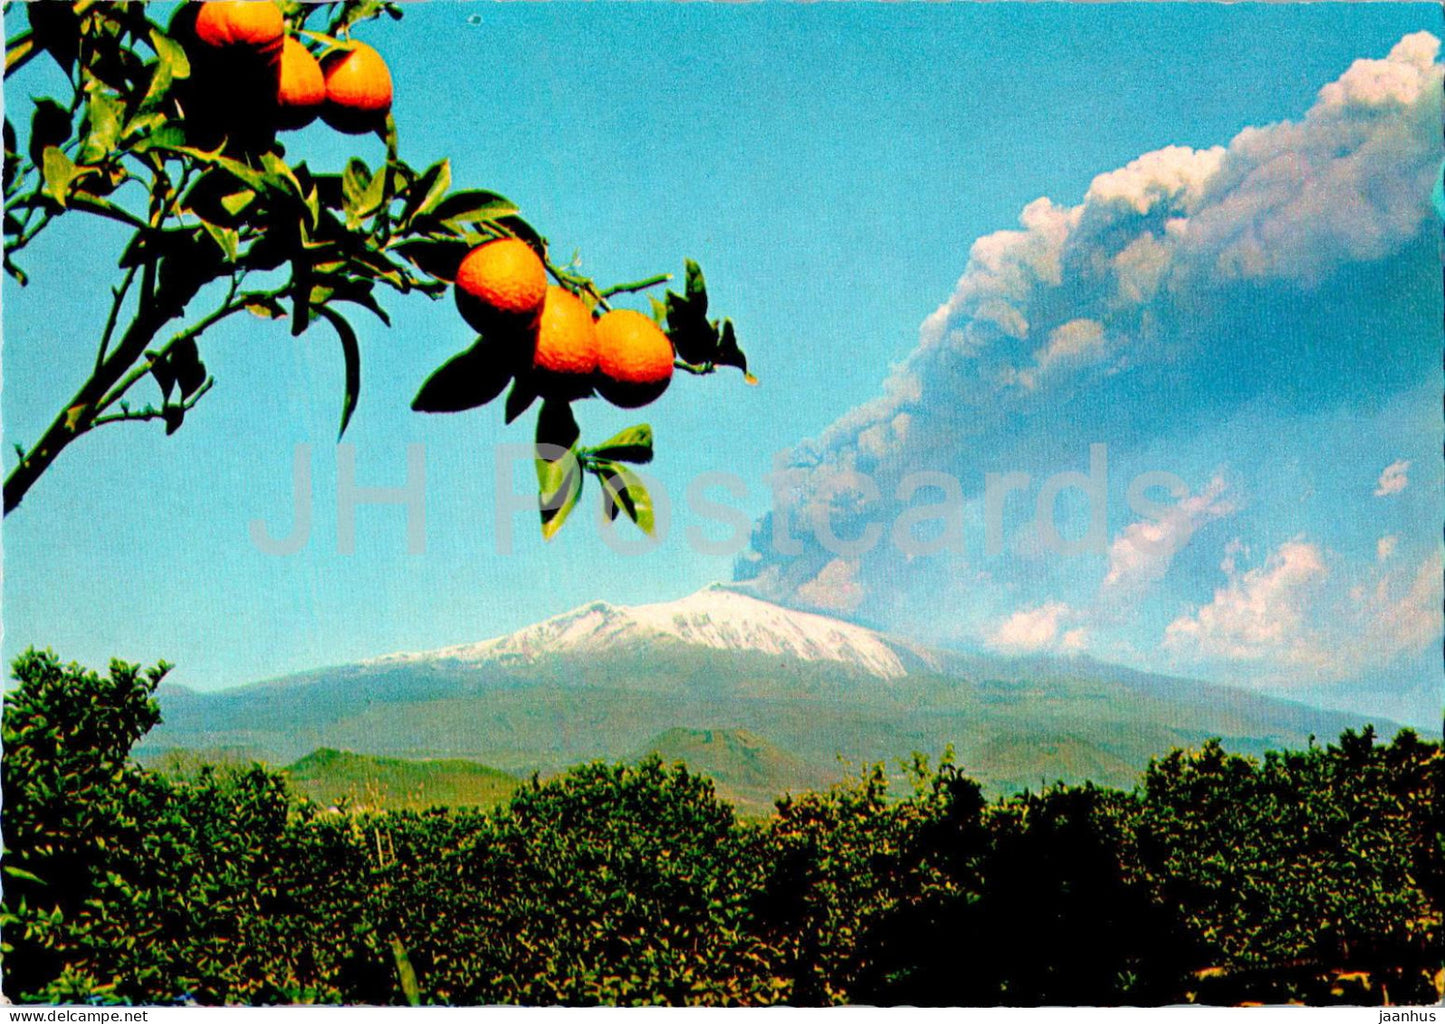 Sicilia pittoresca - Sicily - Catania - orange - 1003 - Italy - unused - JH Postcards